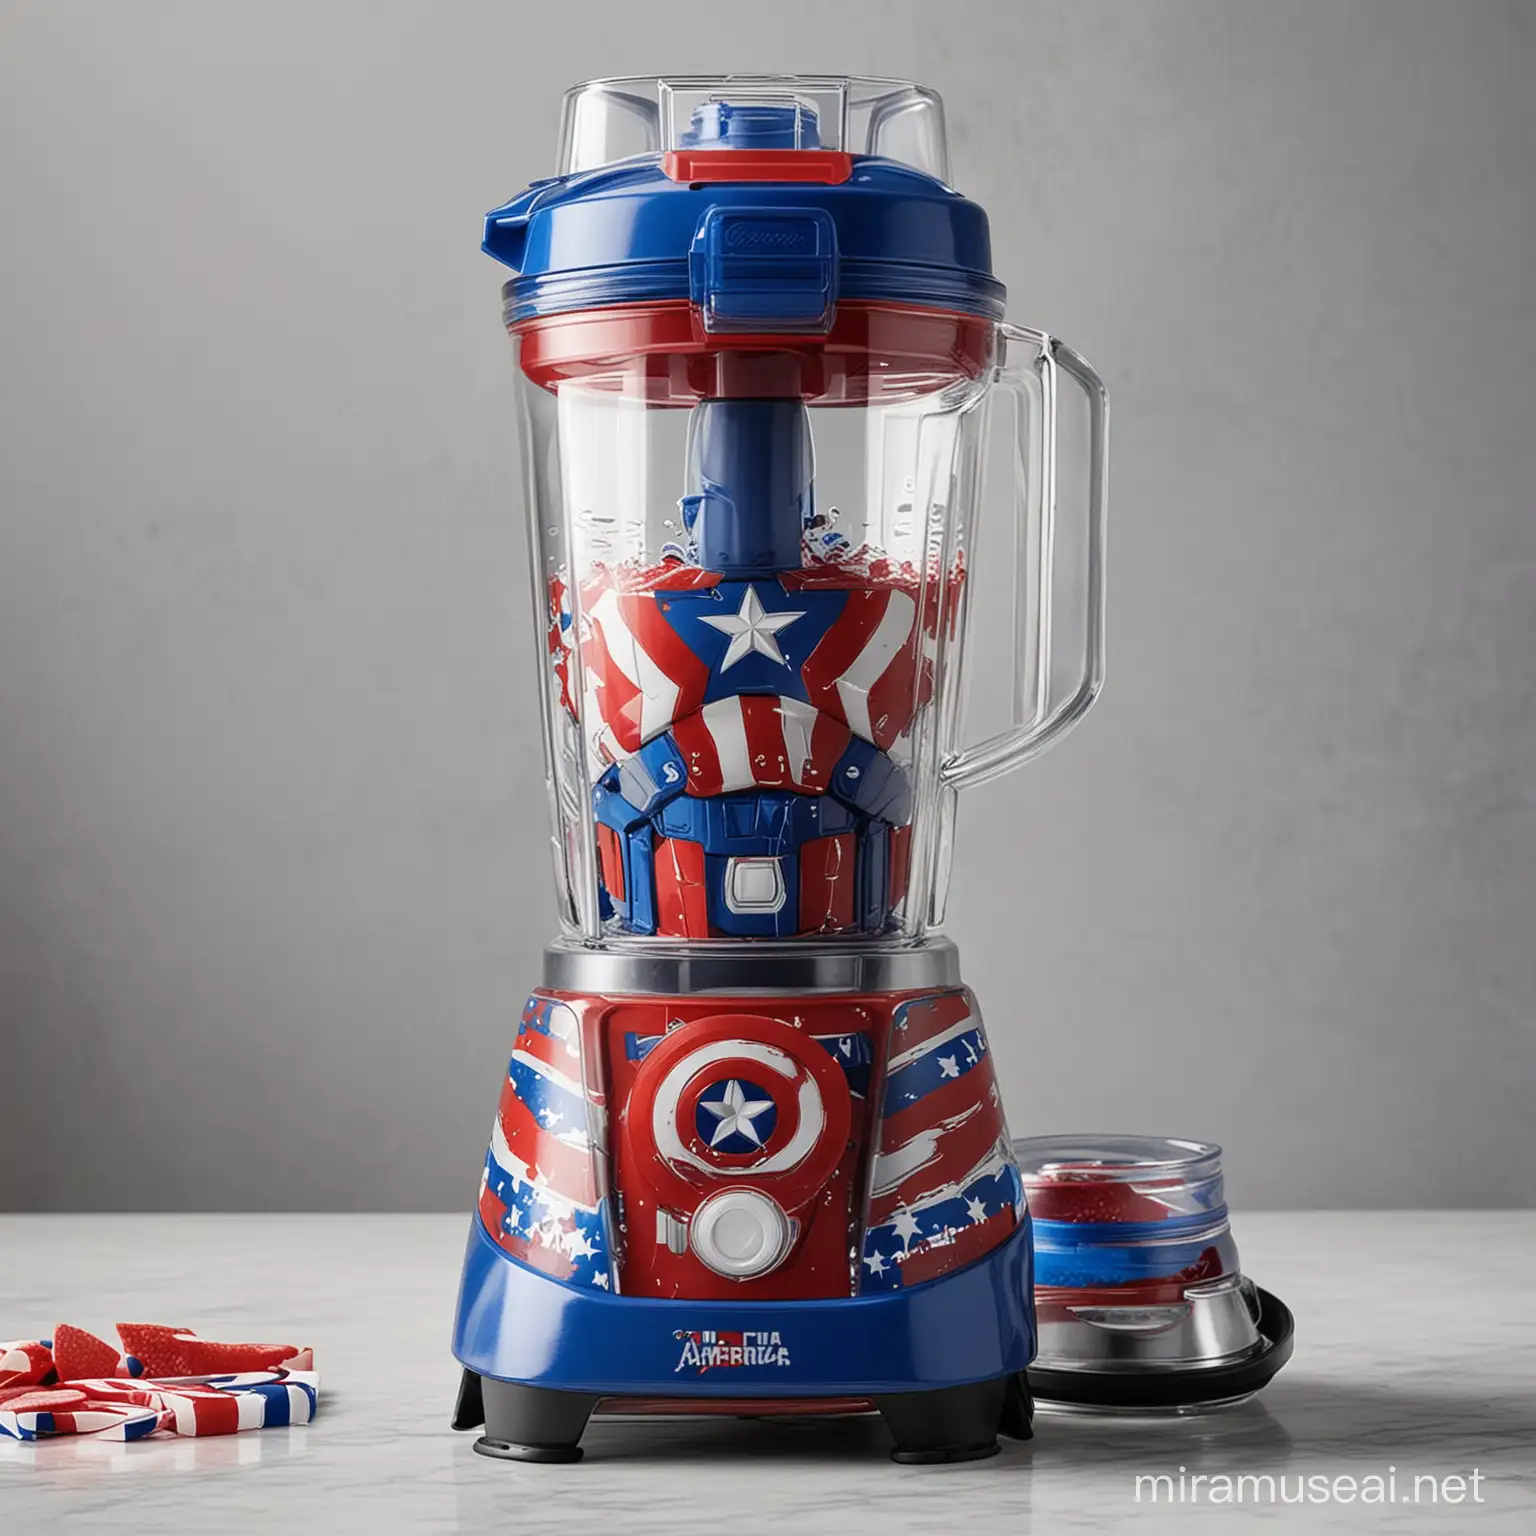 Captain America Patterned Blender Machine for Superhero Fans